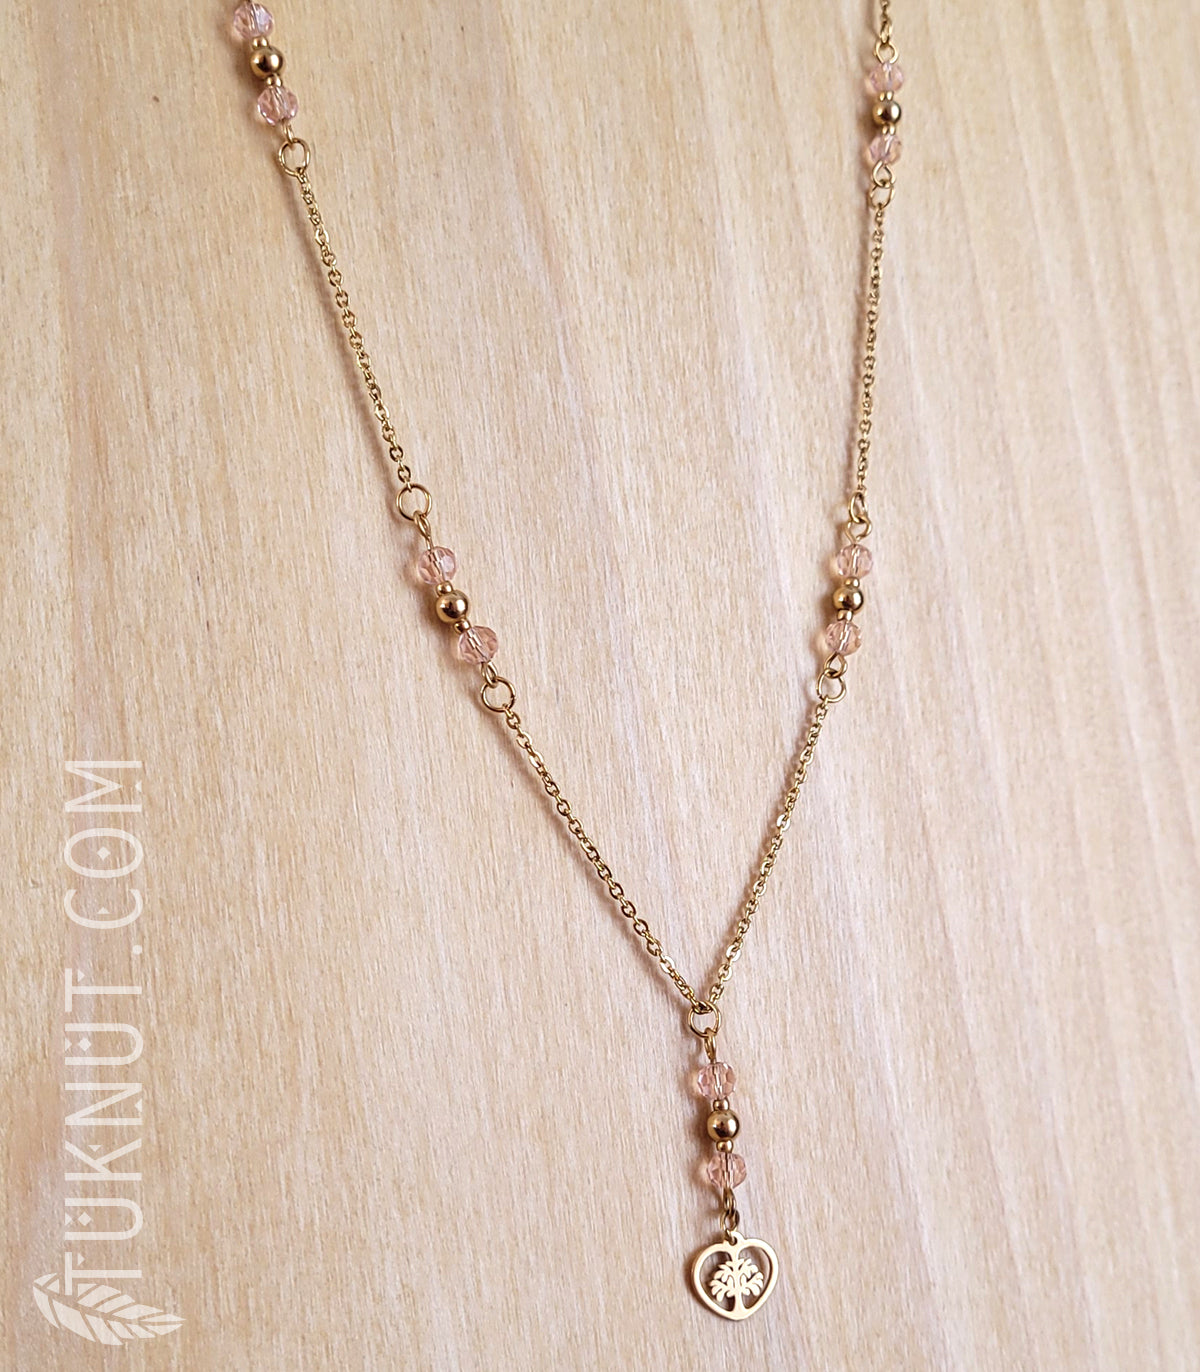 Collier d'inspiration autochtone avec pendentif (arbre de vie dans un coeur doré) en acier inoxydable avec cristal rose (couleurs : or et rose) TUKNUT